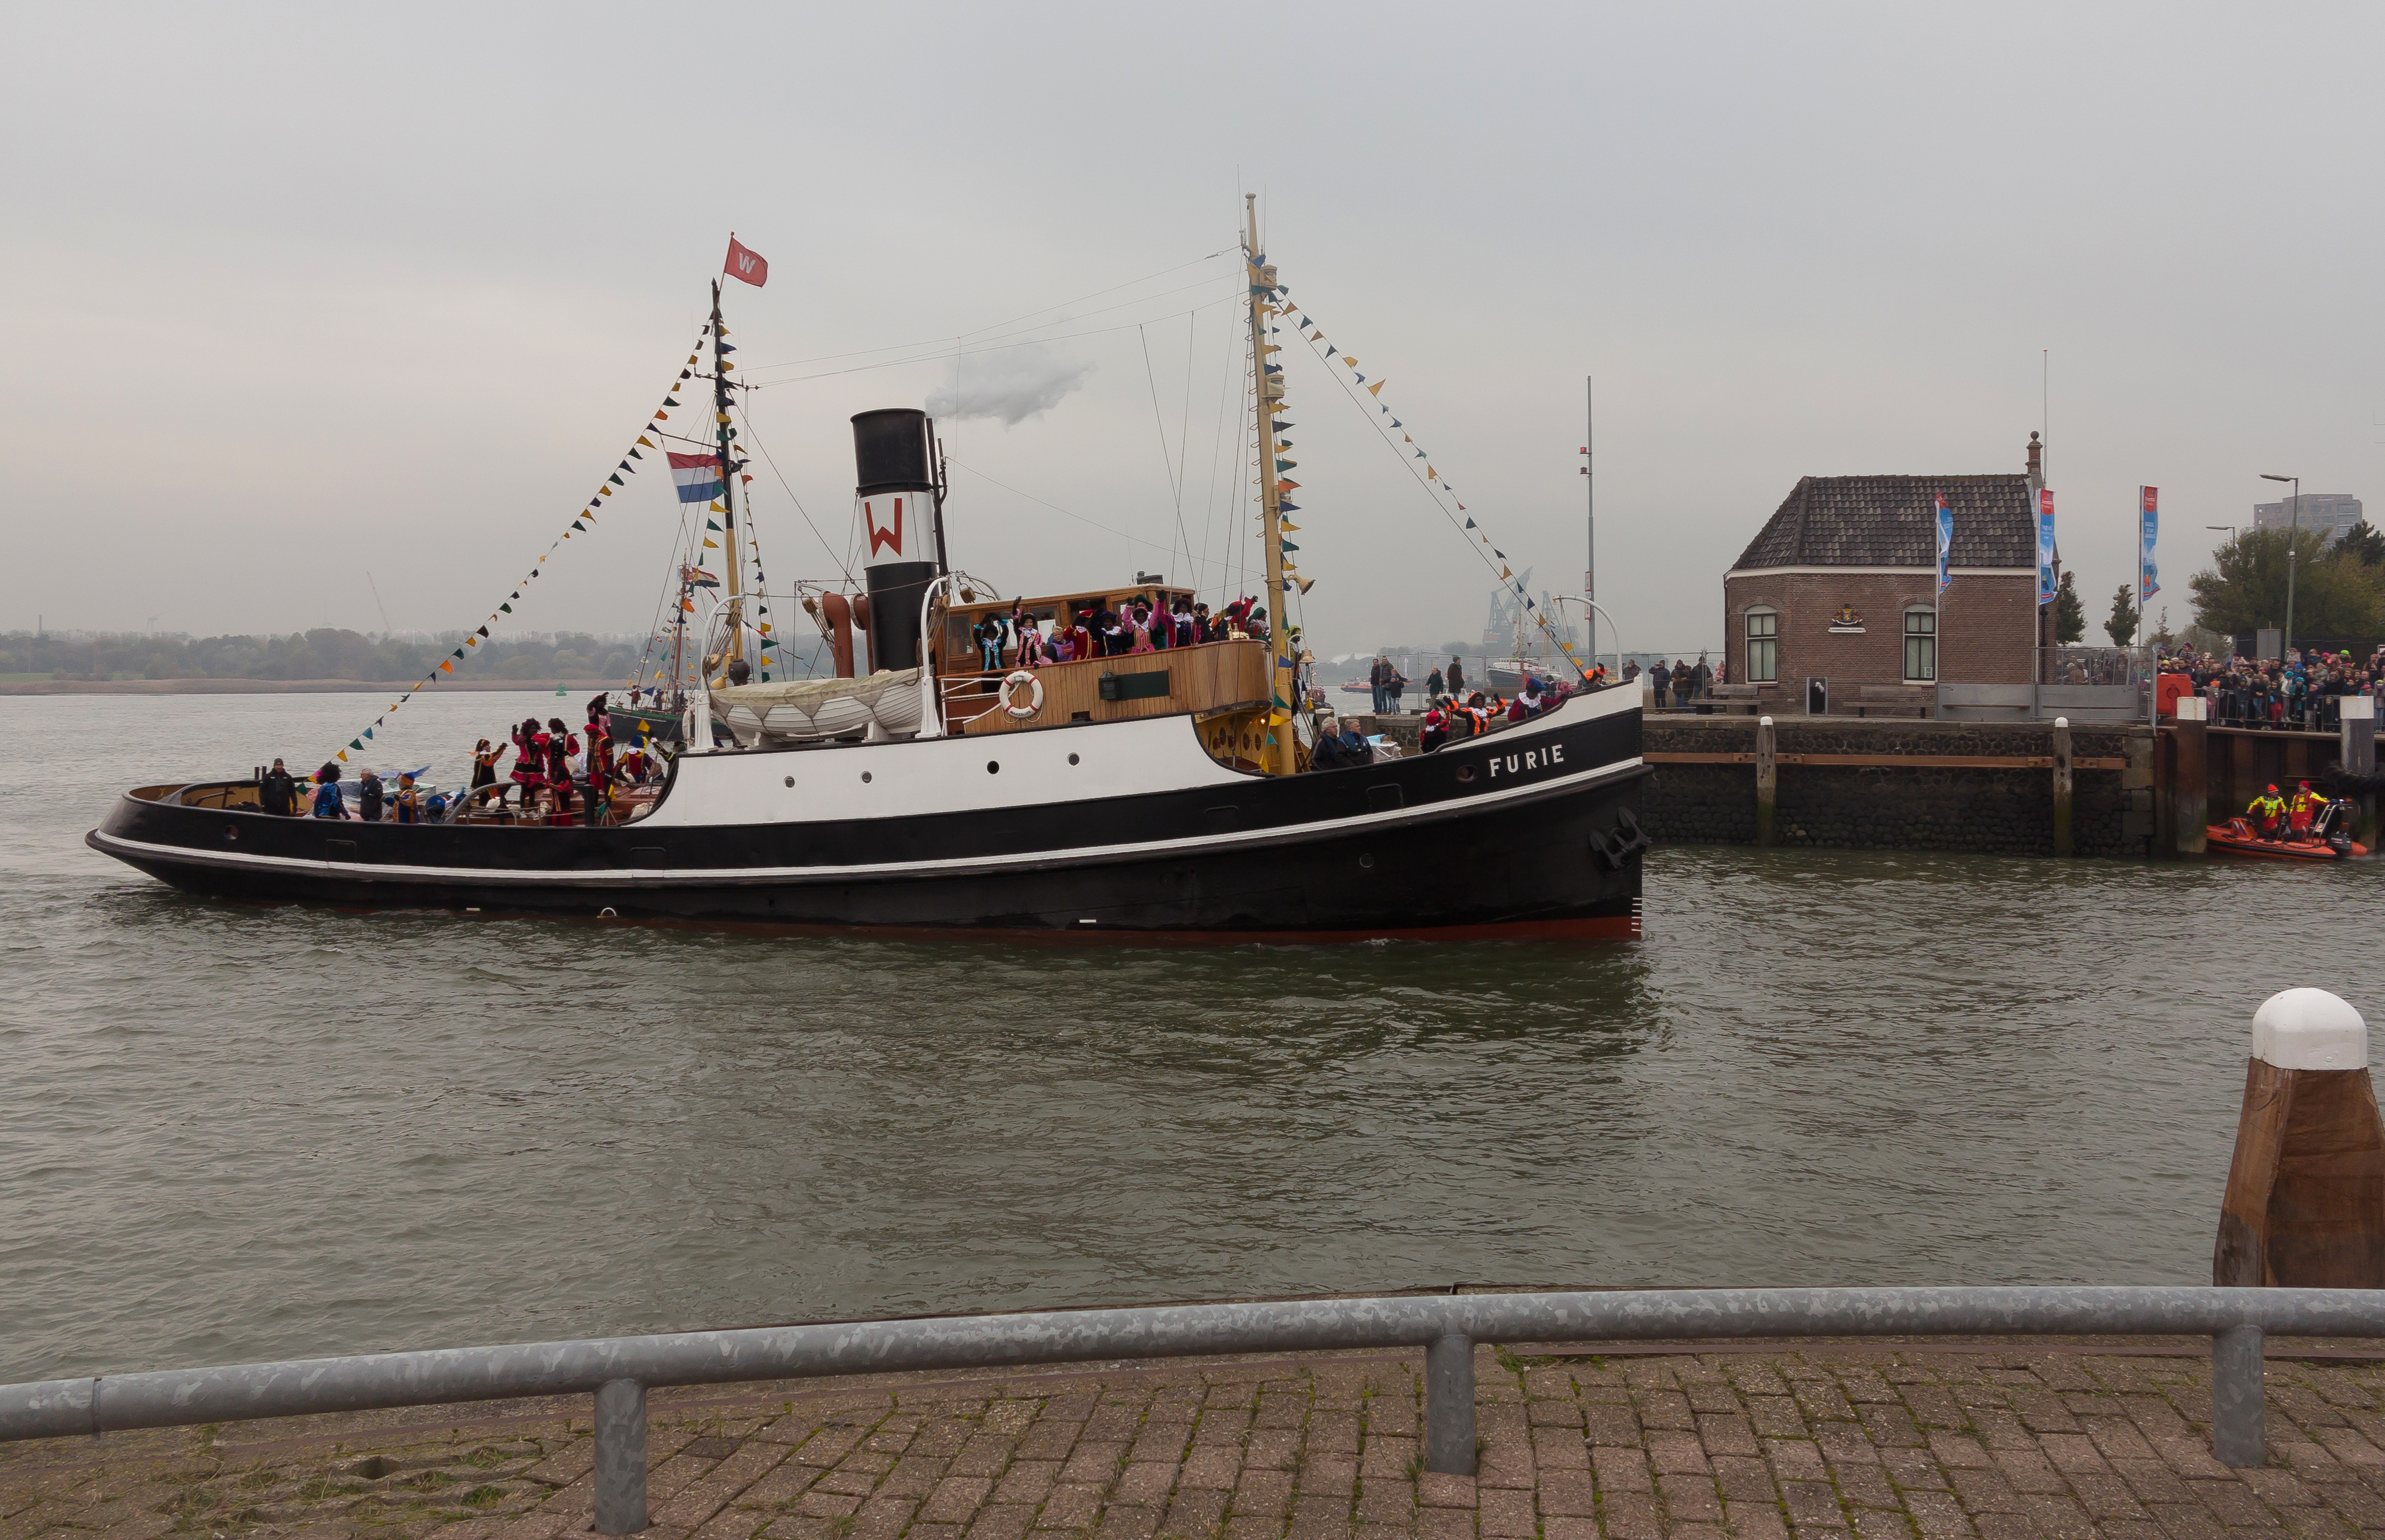 Nationale Intocht Sinterklaas in Maassluis, sleepboot de Furie met Zwarte Pieten IMG 4625 2016-11-12 11.45